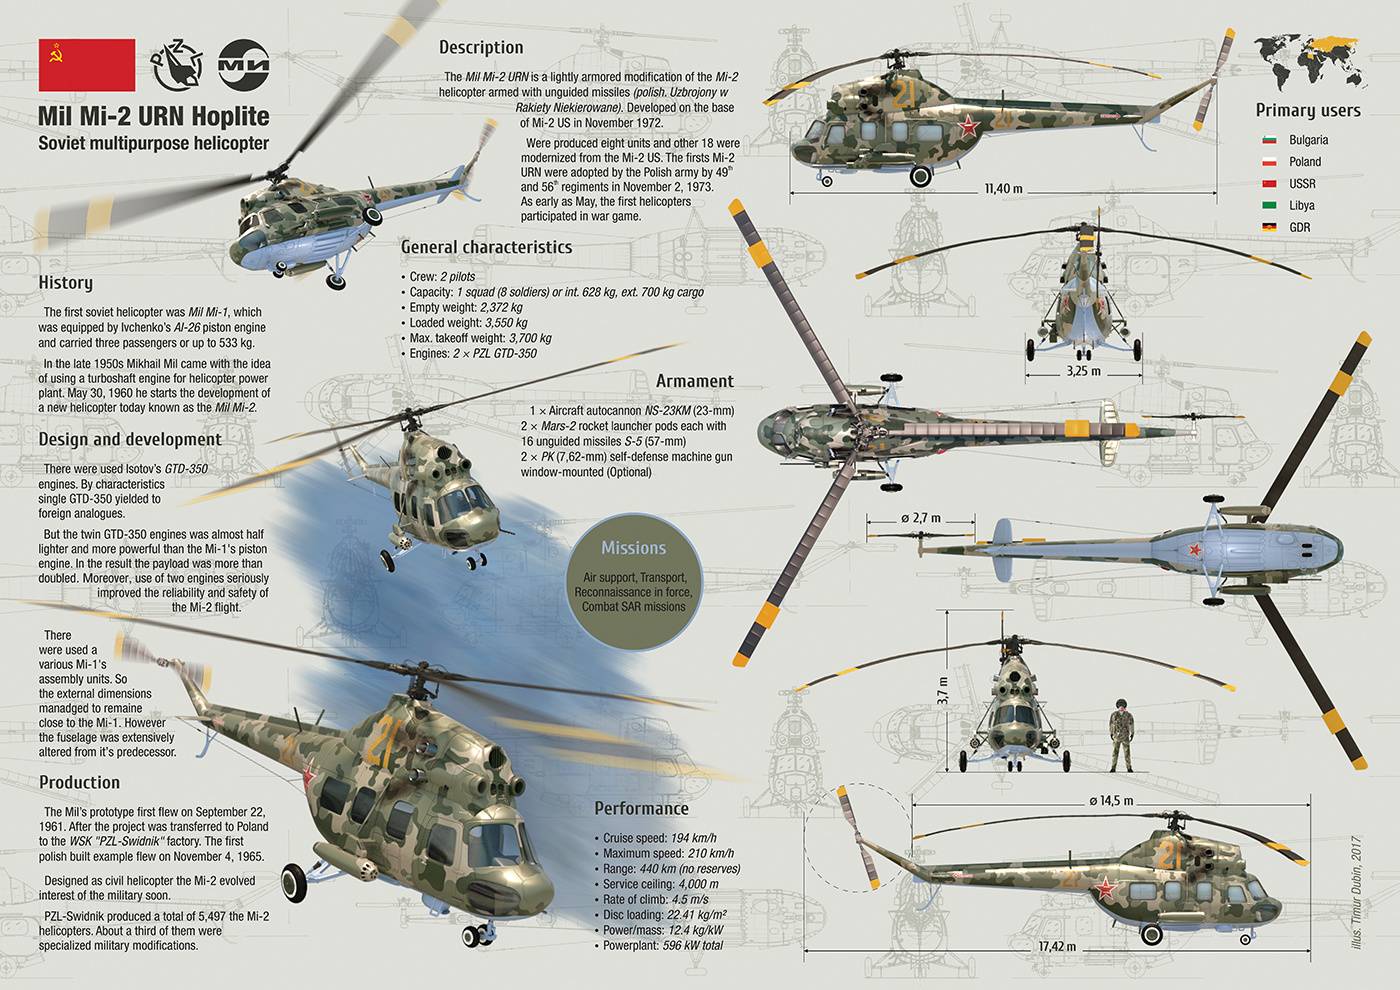 Ми-24: легендарный ударный вертолёт, технические характеристики (ттх), вооружение, боевое применение, скорость